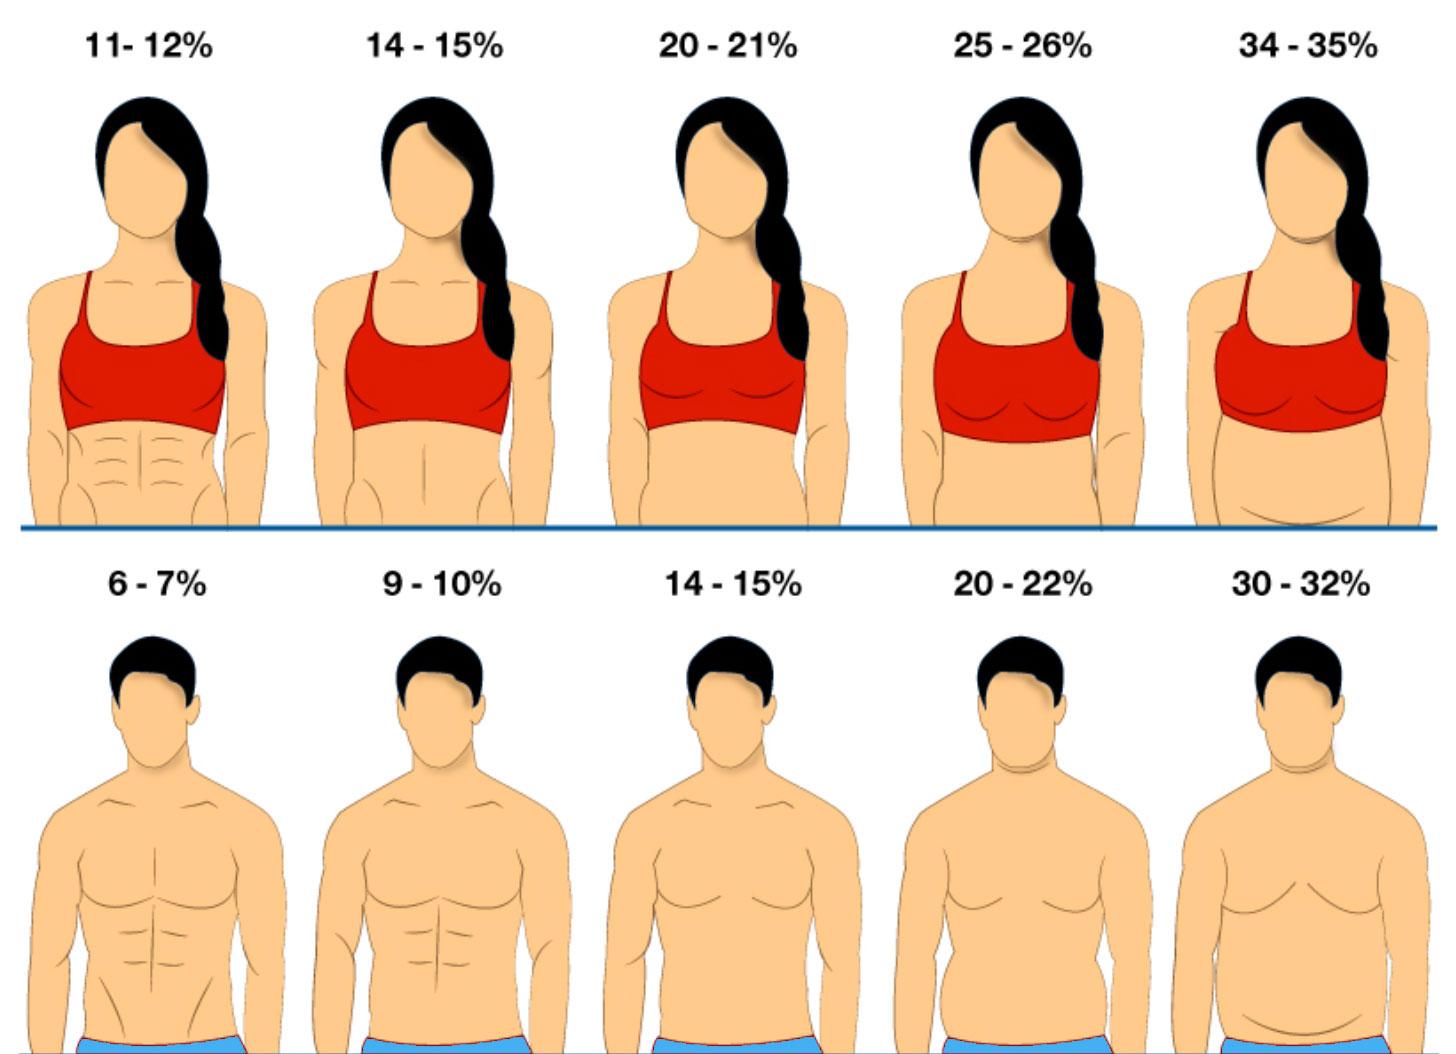 女士:因为女士的身体是会储存更多的脂肪的,所以当女士体脂20%时,6块